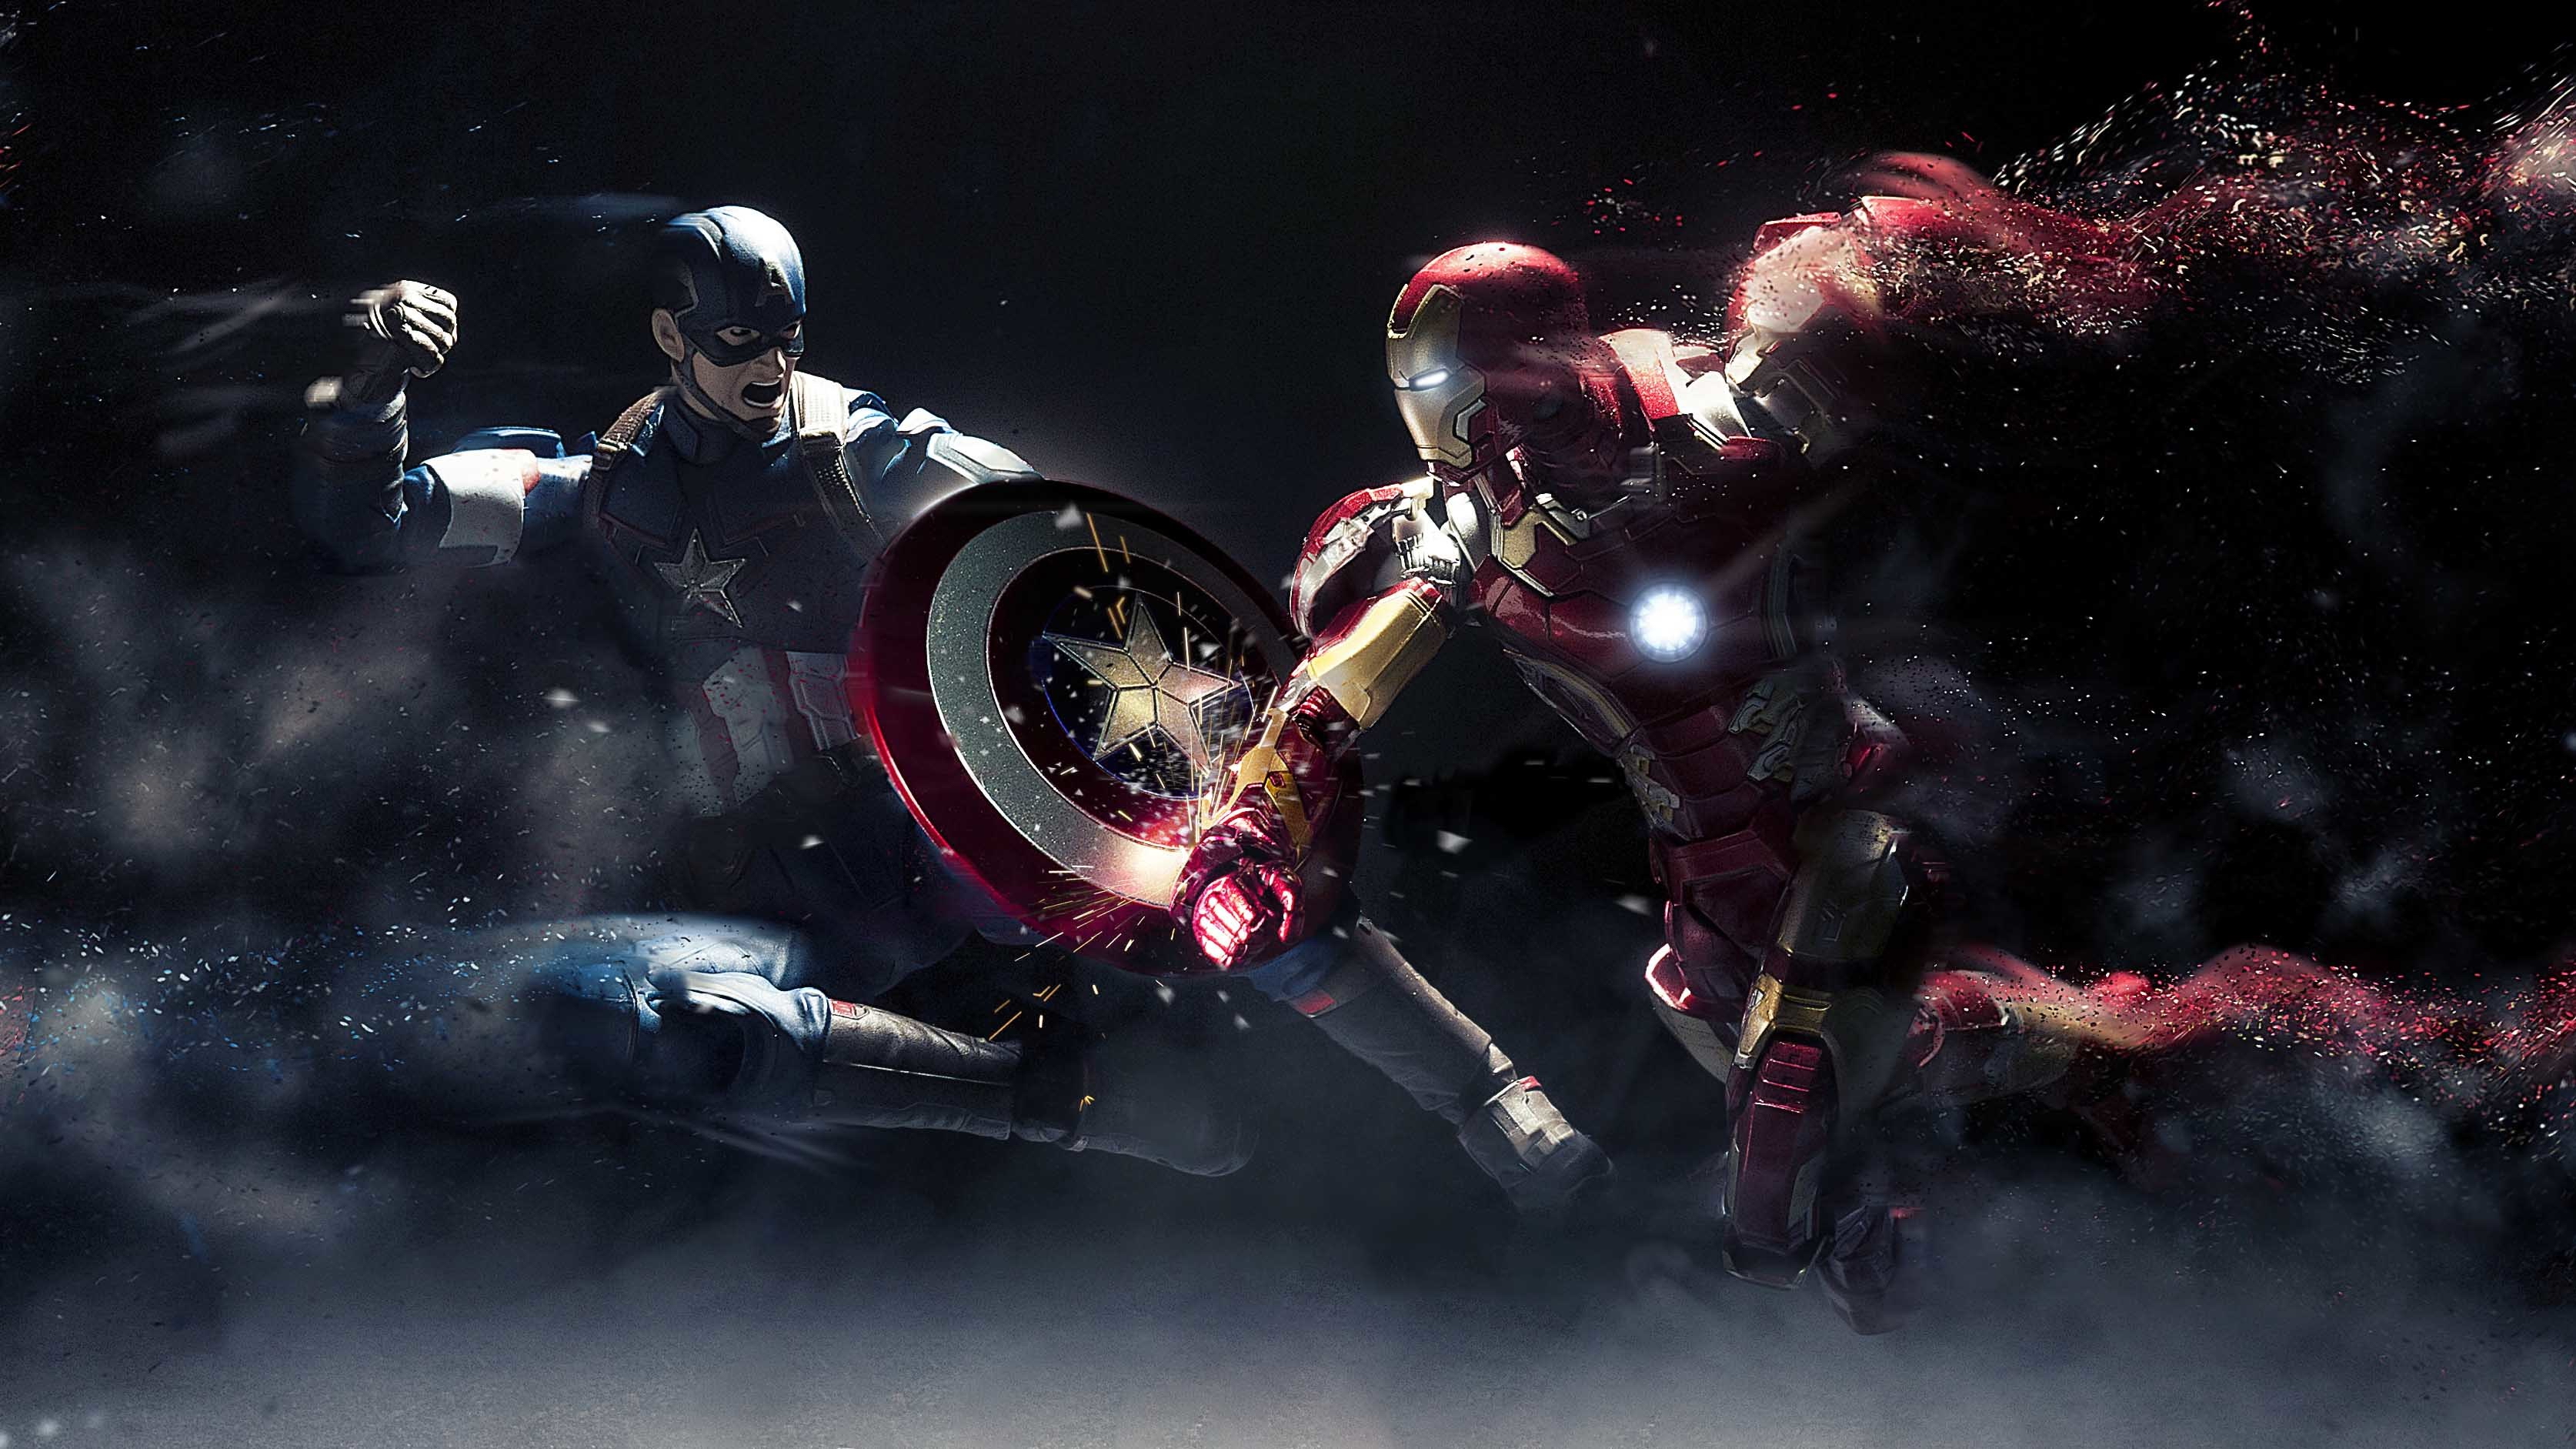 Обои 16 10. Железный человек против капитана Америке. Железный человек против капитана. Железный человек vs Капитан Америка. Обои Капитан Америка и Железный человек.